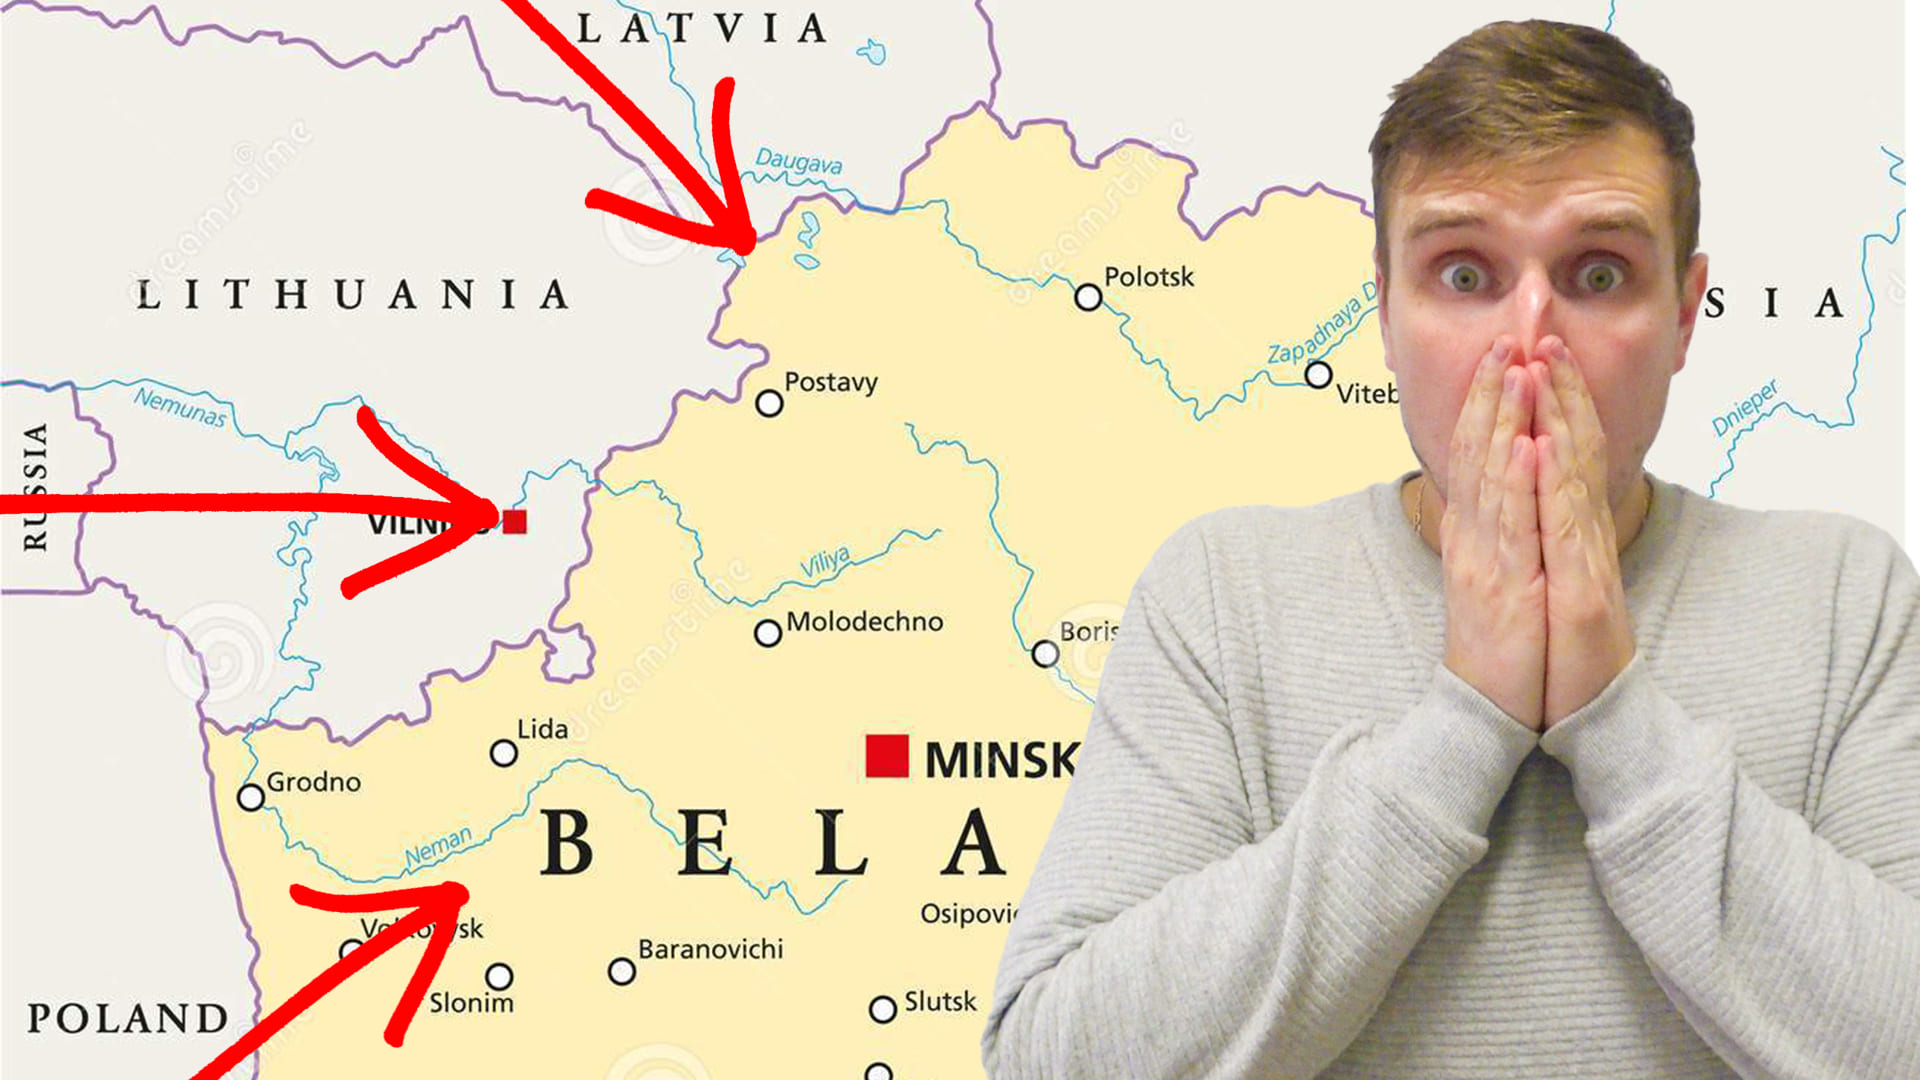 Показать откуда нападение на беларусь. Карта нападения на Беларусь. Карта откуда на Беларусь готовилось нападение. План нападения на Беларусь.